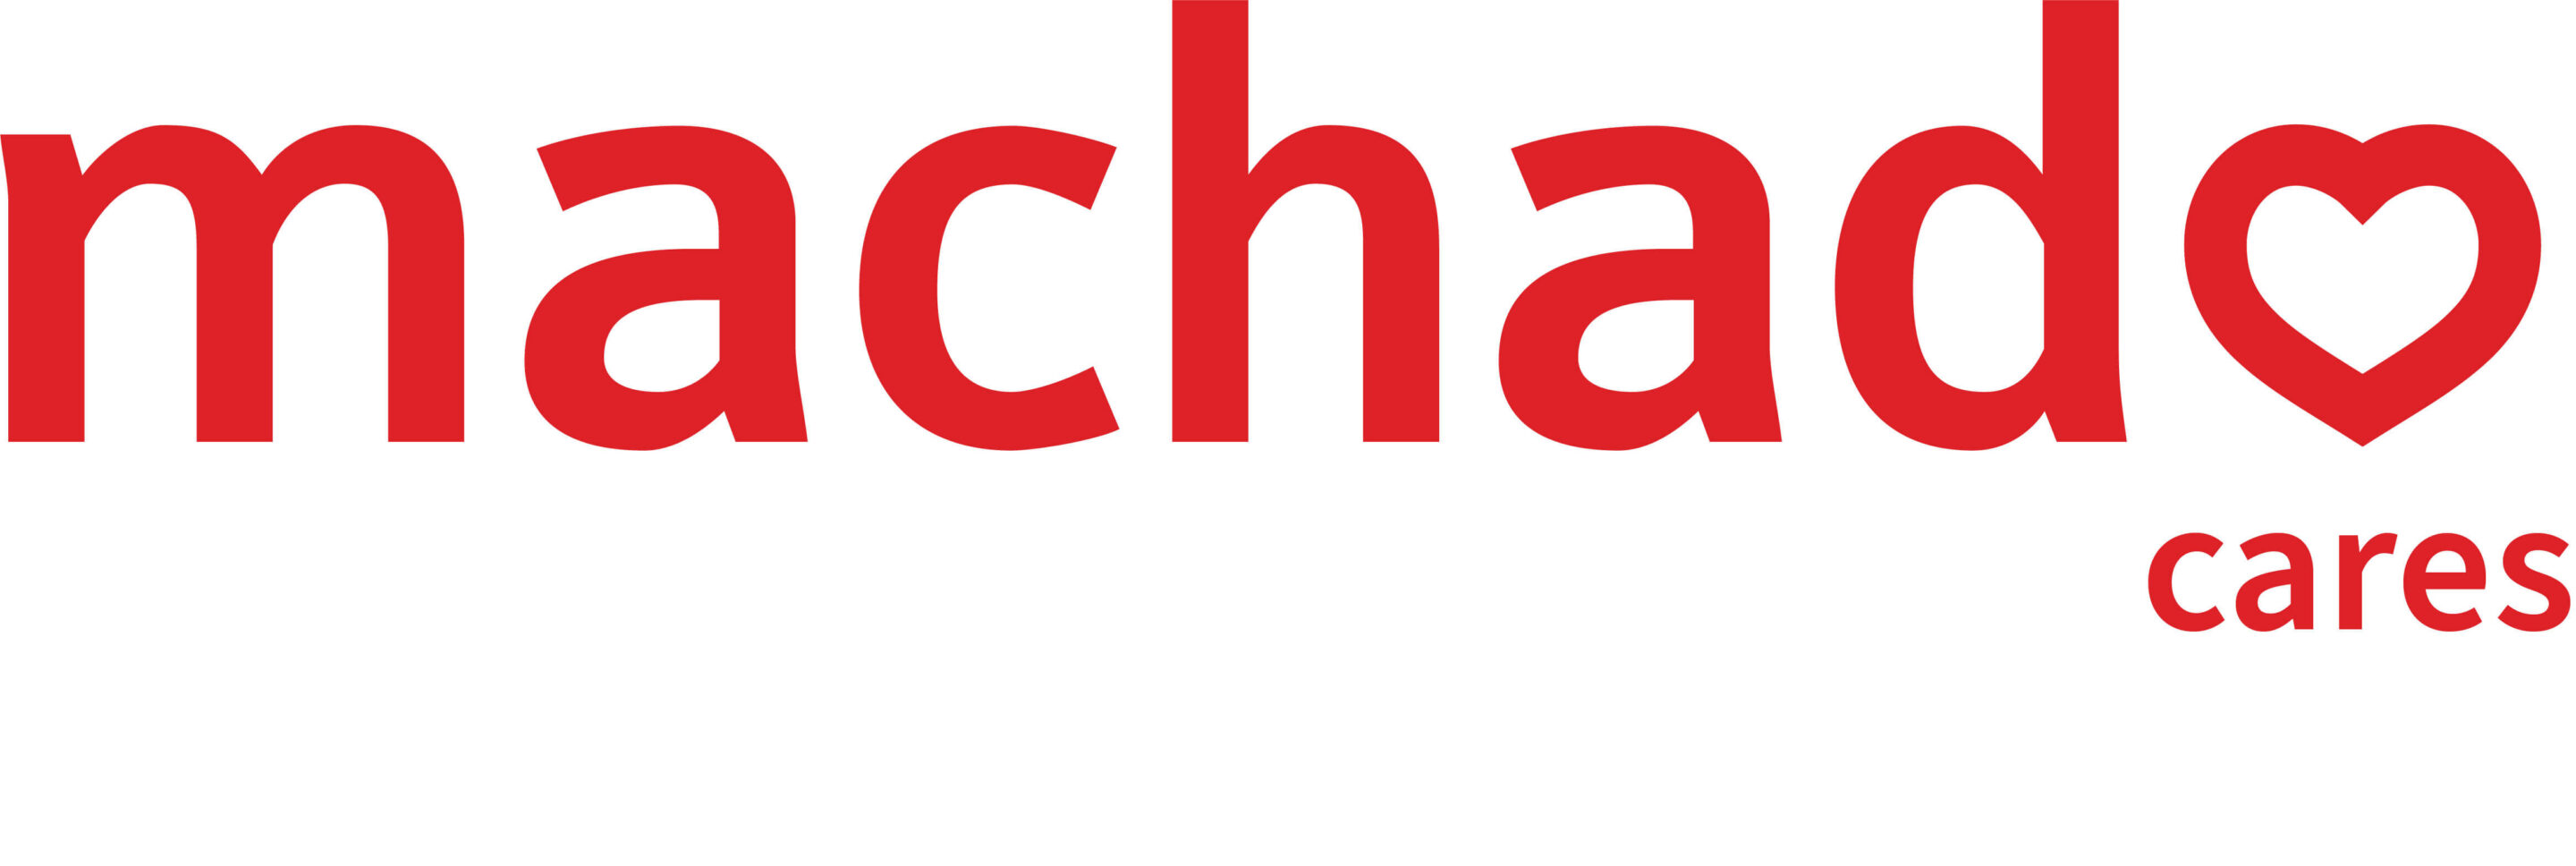 Machado-Cares-Logo